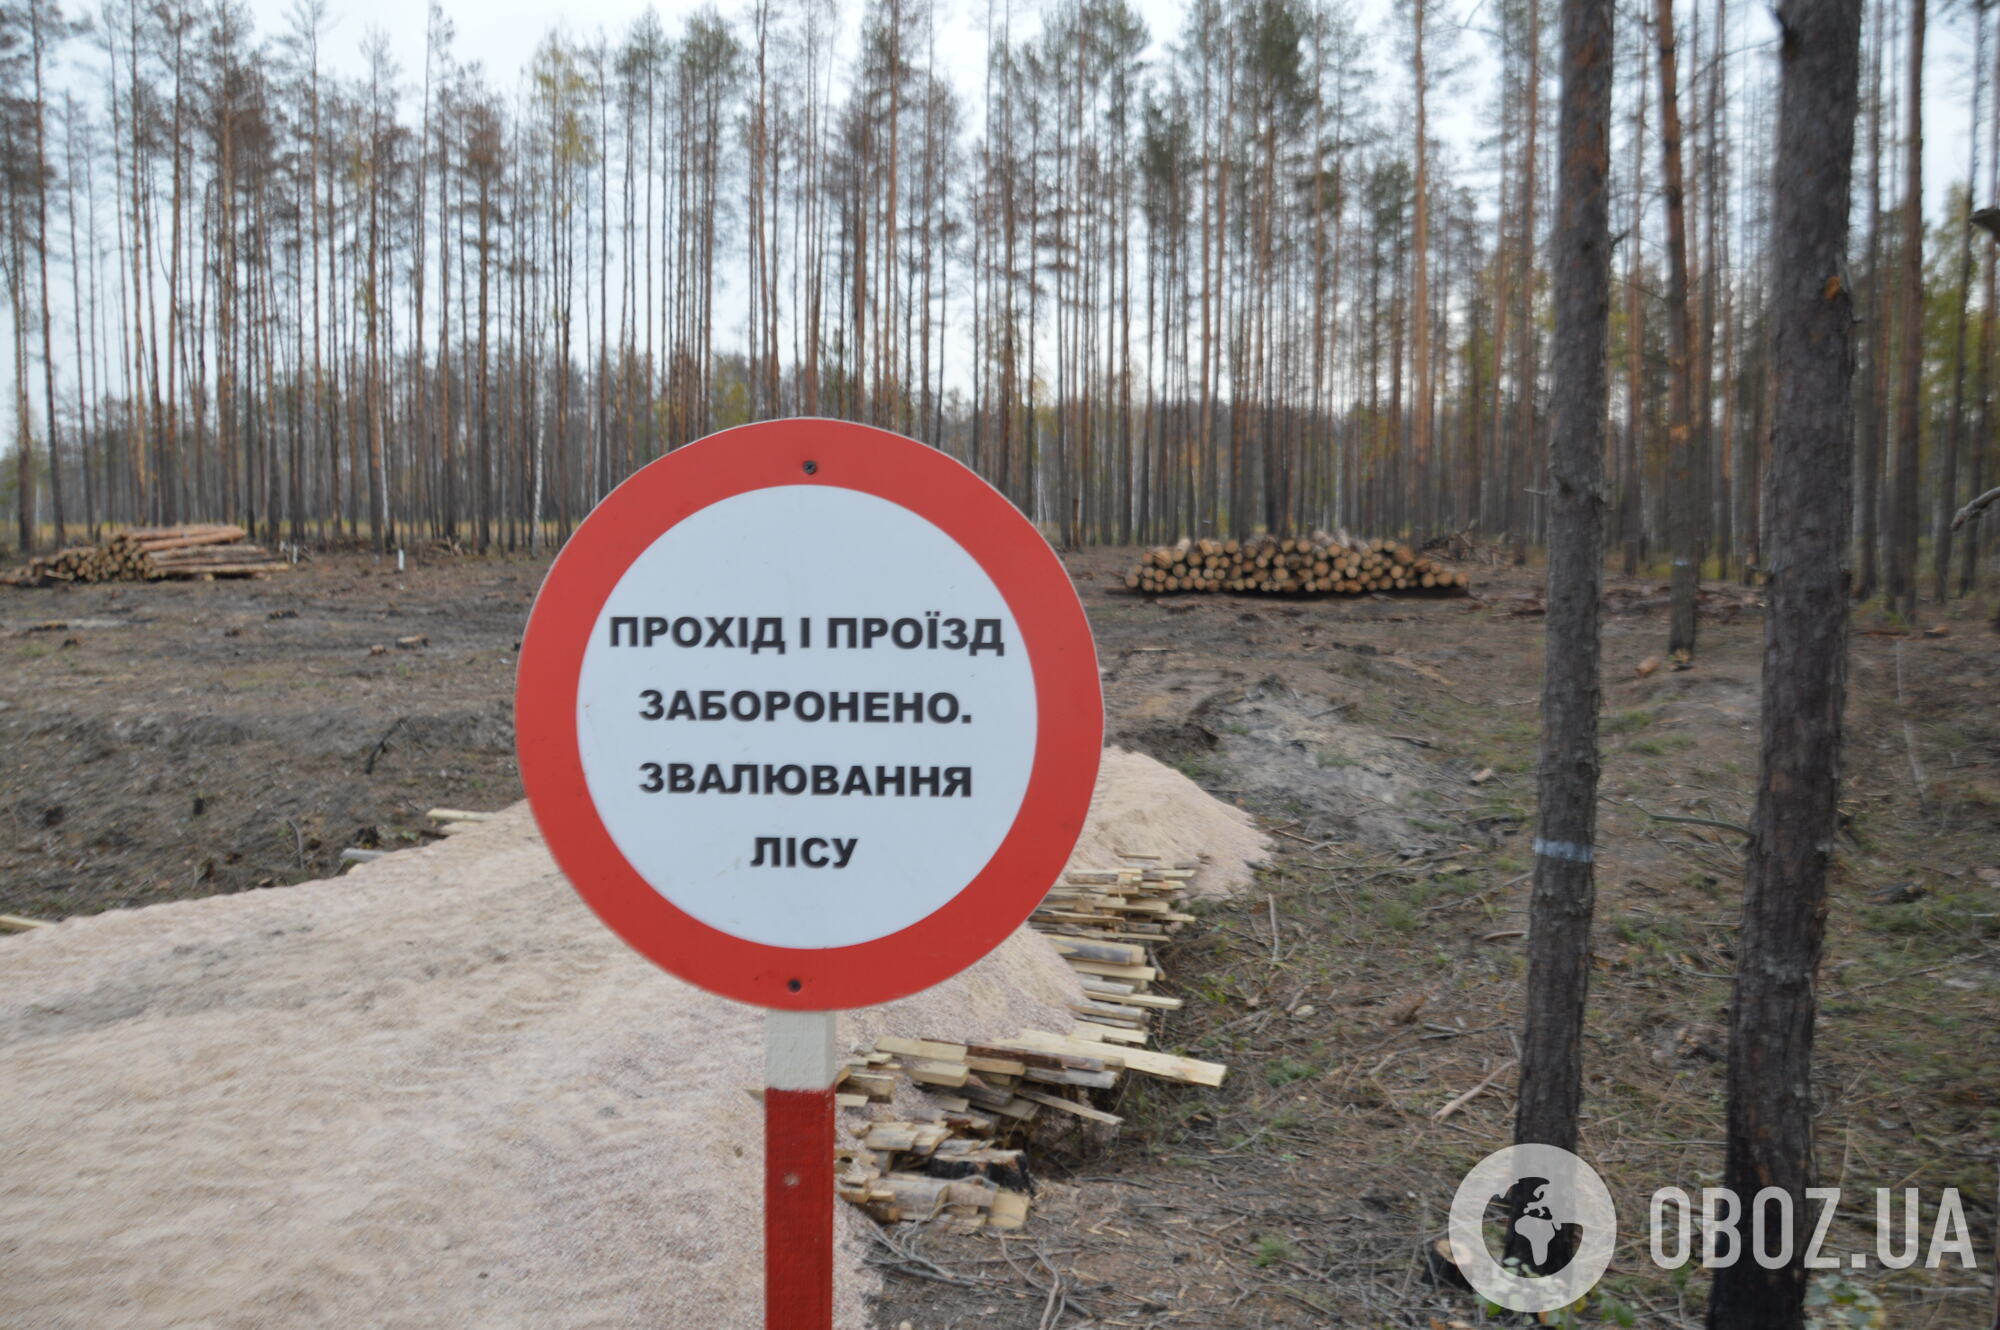 Розчищення лісу після пожежі в Овруцькому лісництві